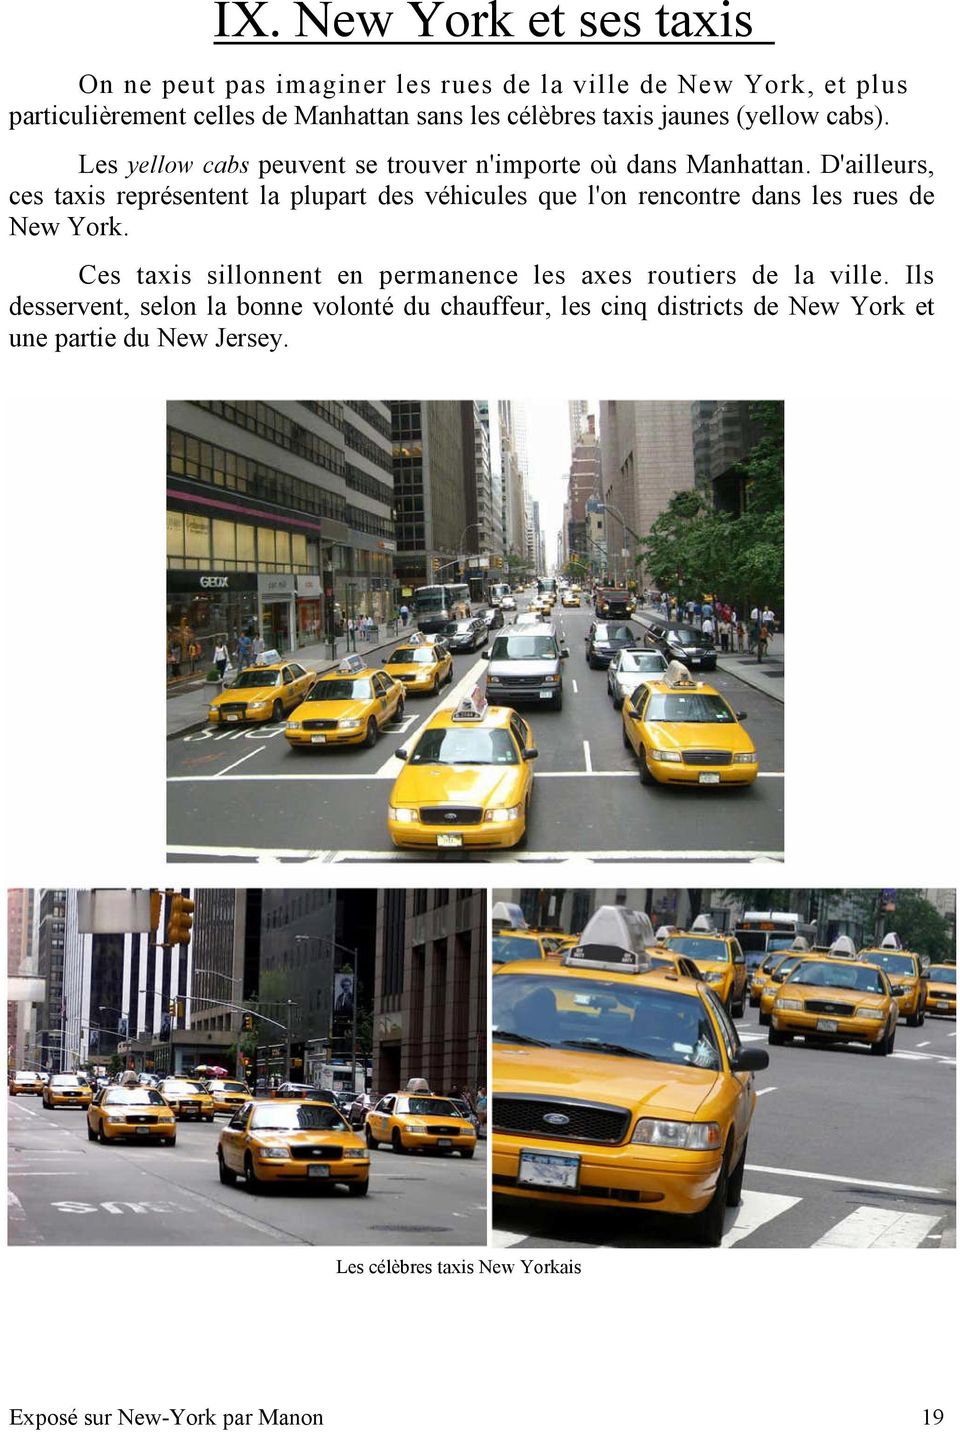 D'ailleurs, ces taxis représentent la plupart des véhicules que l'on rencontre dans les rues de New York.